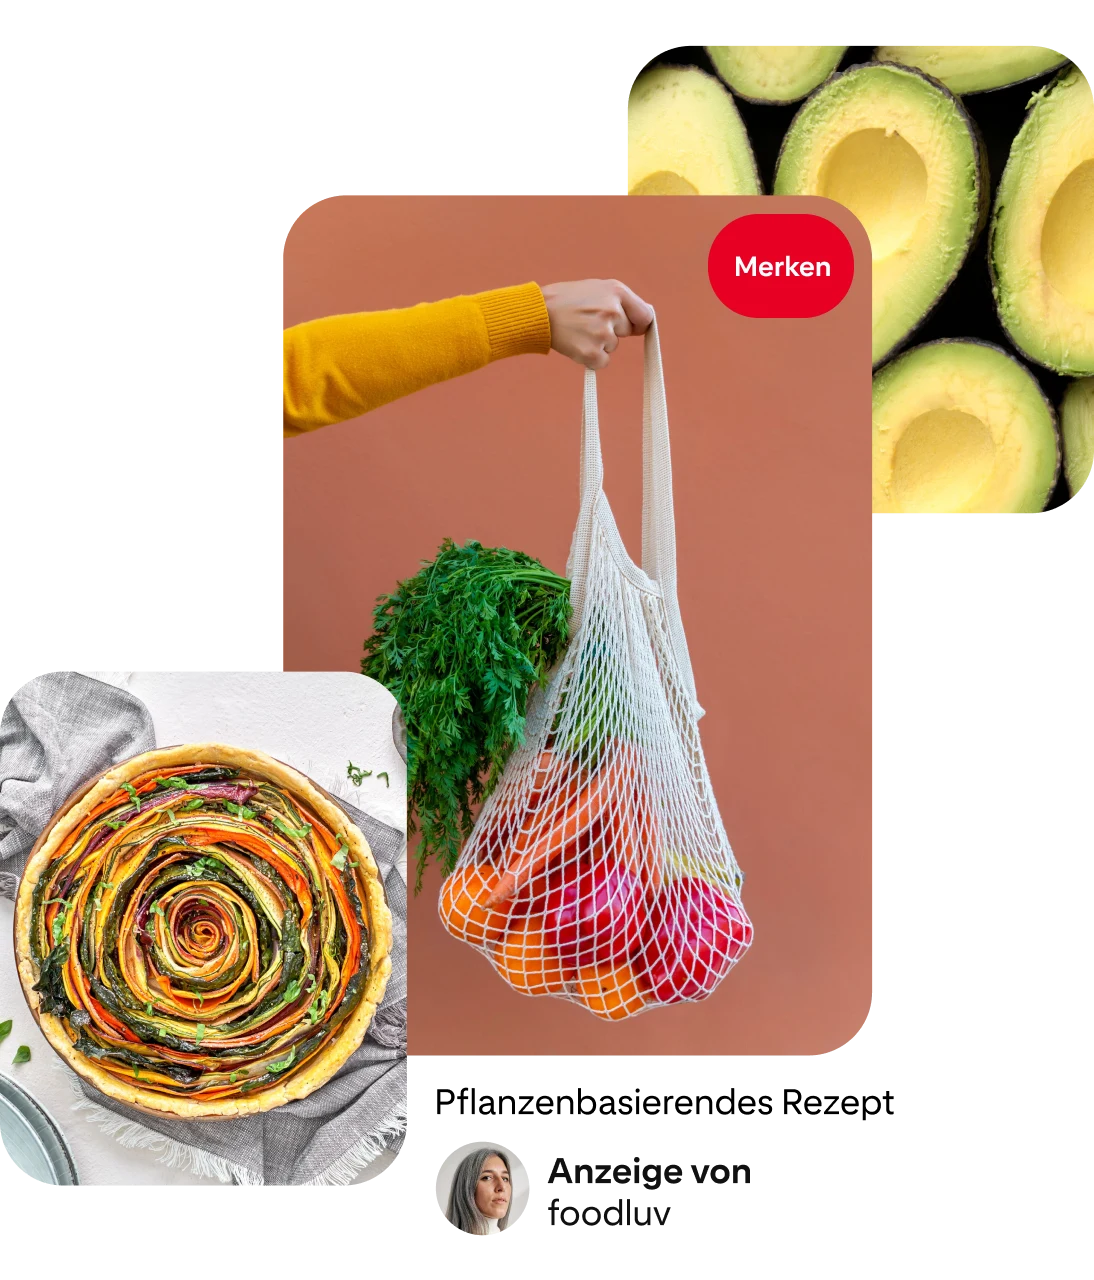 Pin-Collage: Aufnahme von oben von bunter Gemüsequiche in Strudelform. Weiße Hand in gelbem Ärmel hält weißes Einkaufsnetz mit orange- und rotfarbenem Gemüse und grünen Blättern. Aufnahme von oben von grünen Avocadohälften.